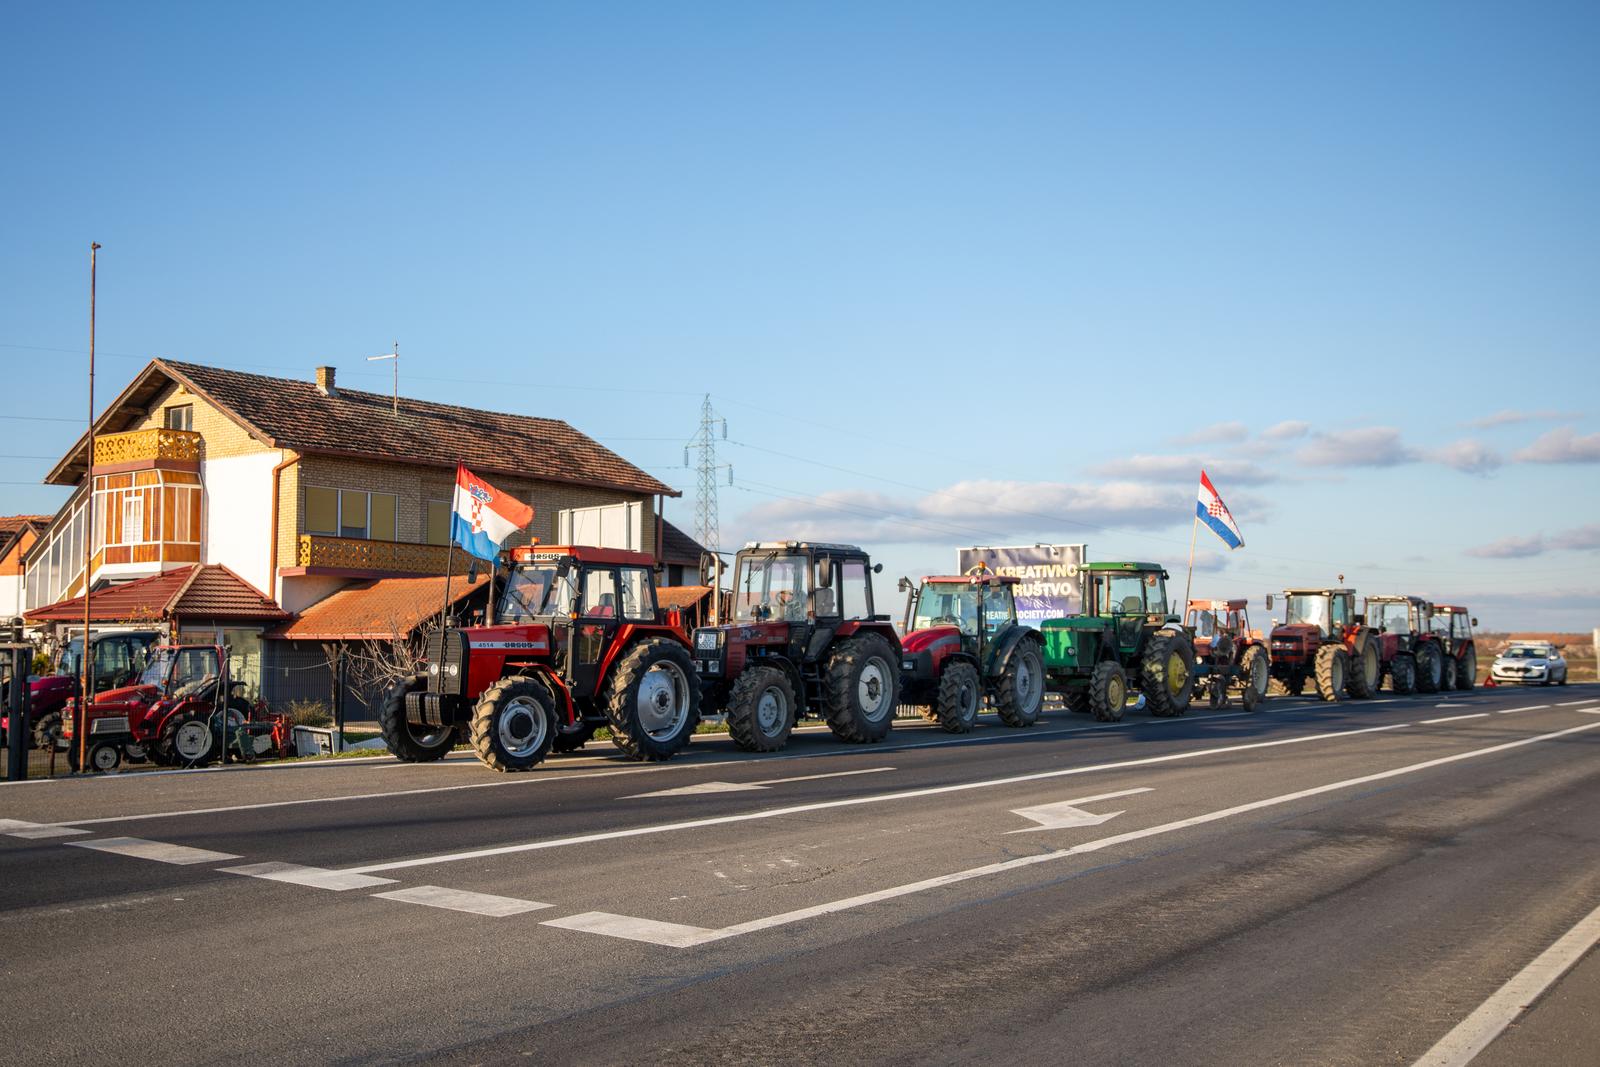 03.12.2023., Lipovac - Na novom punktu u Gradistu prosvjednici su traktorima djelomicno blokirali cestu Photo: Borna jaksic/PIXSELL